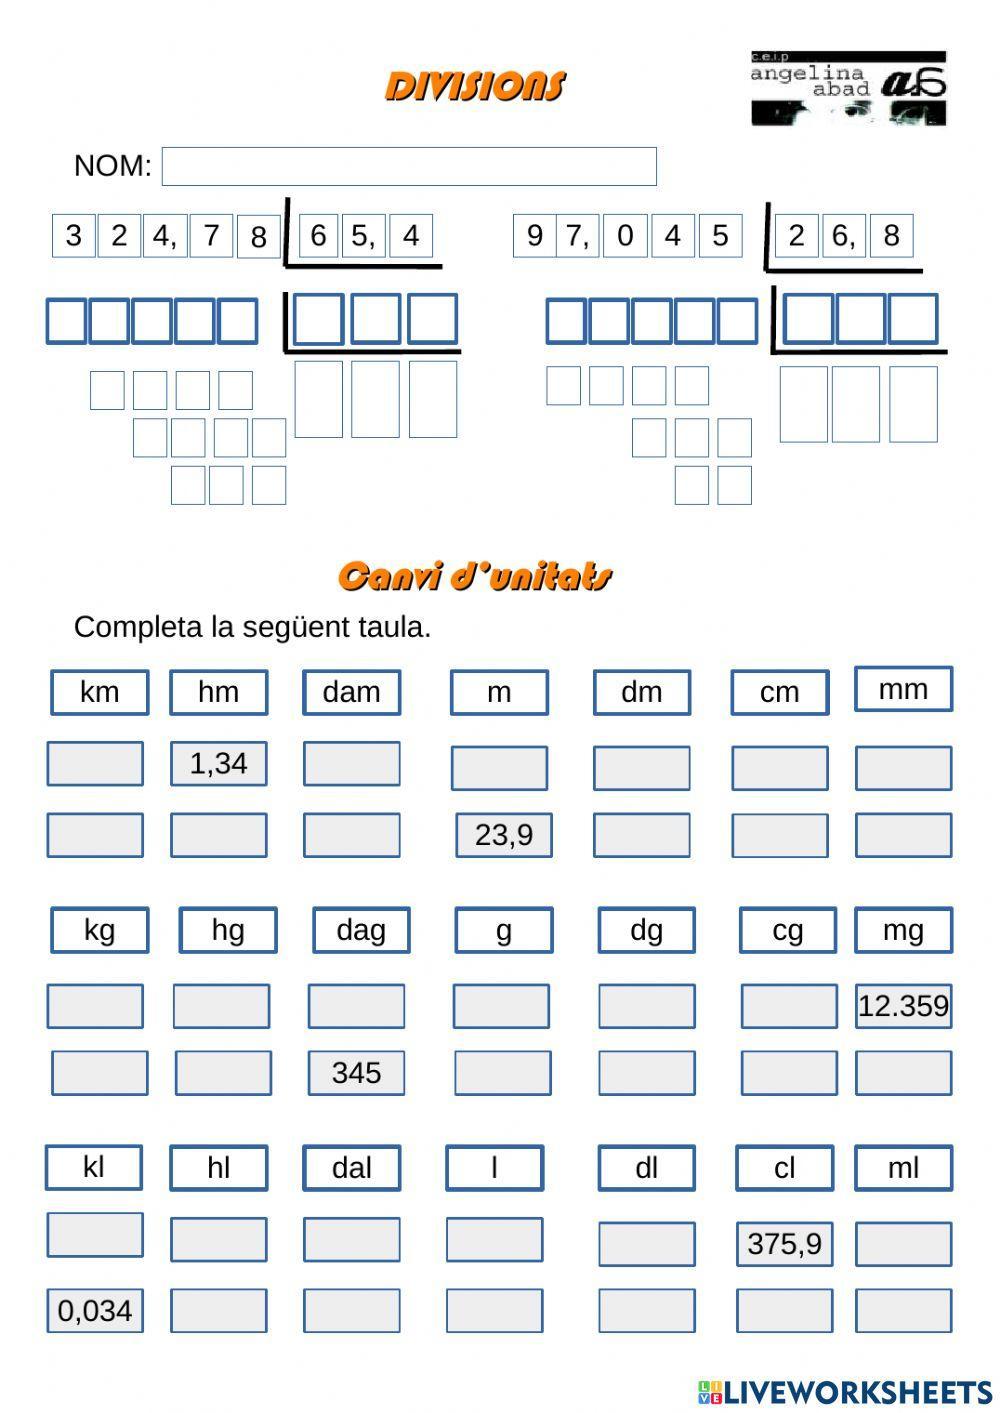 DIvisions amb decimals i canvi d'unitats